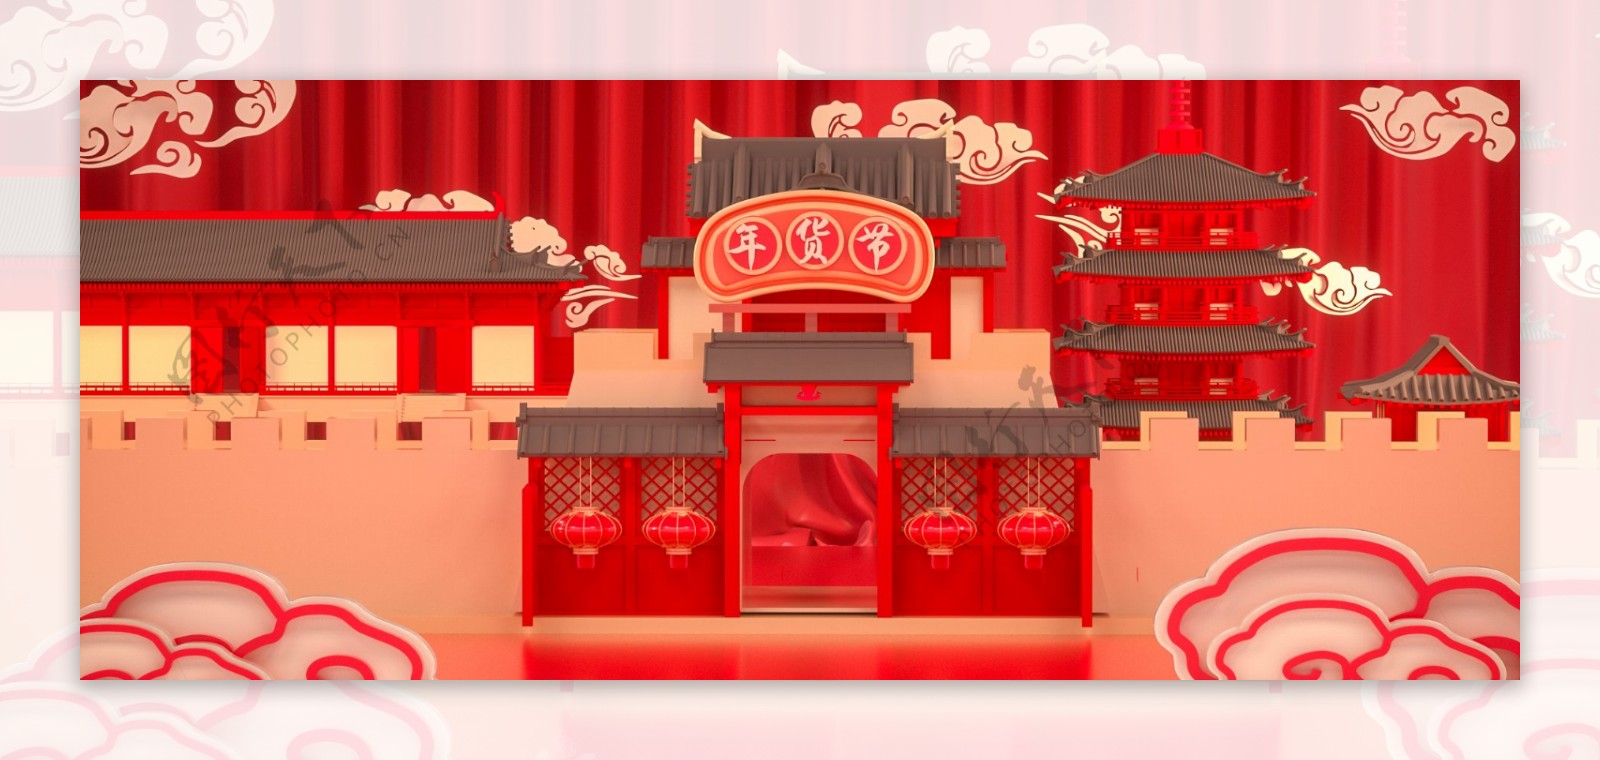 C4D红色新年年货节促销电商海报传统建筑